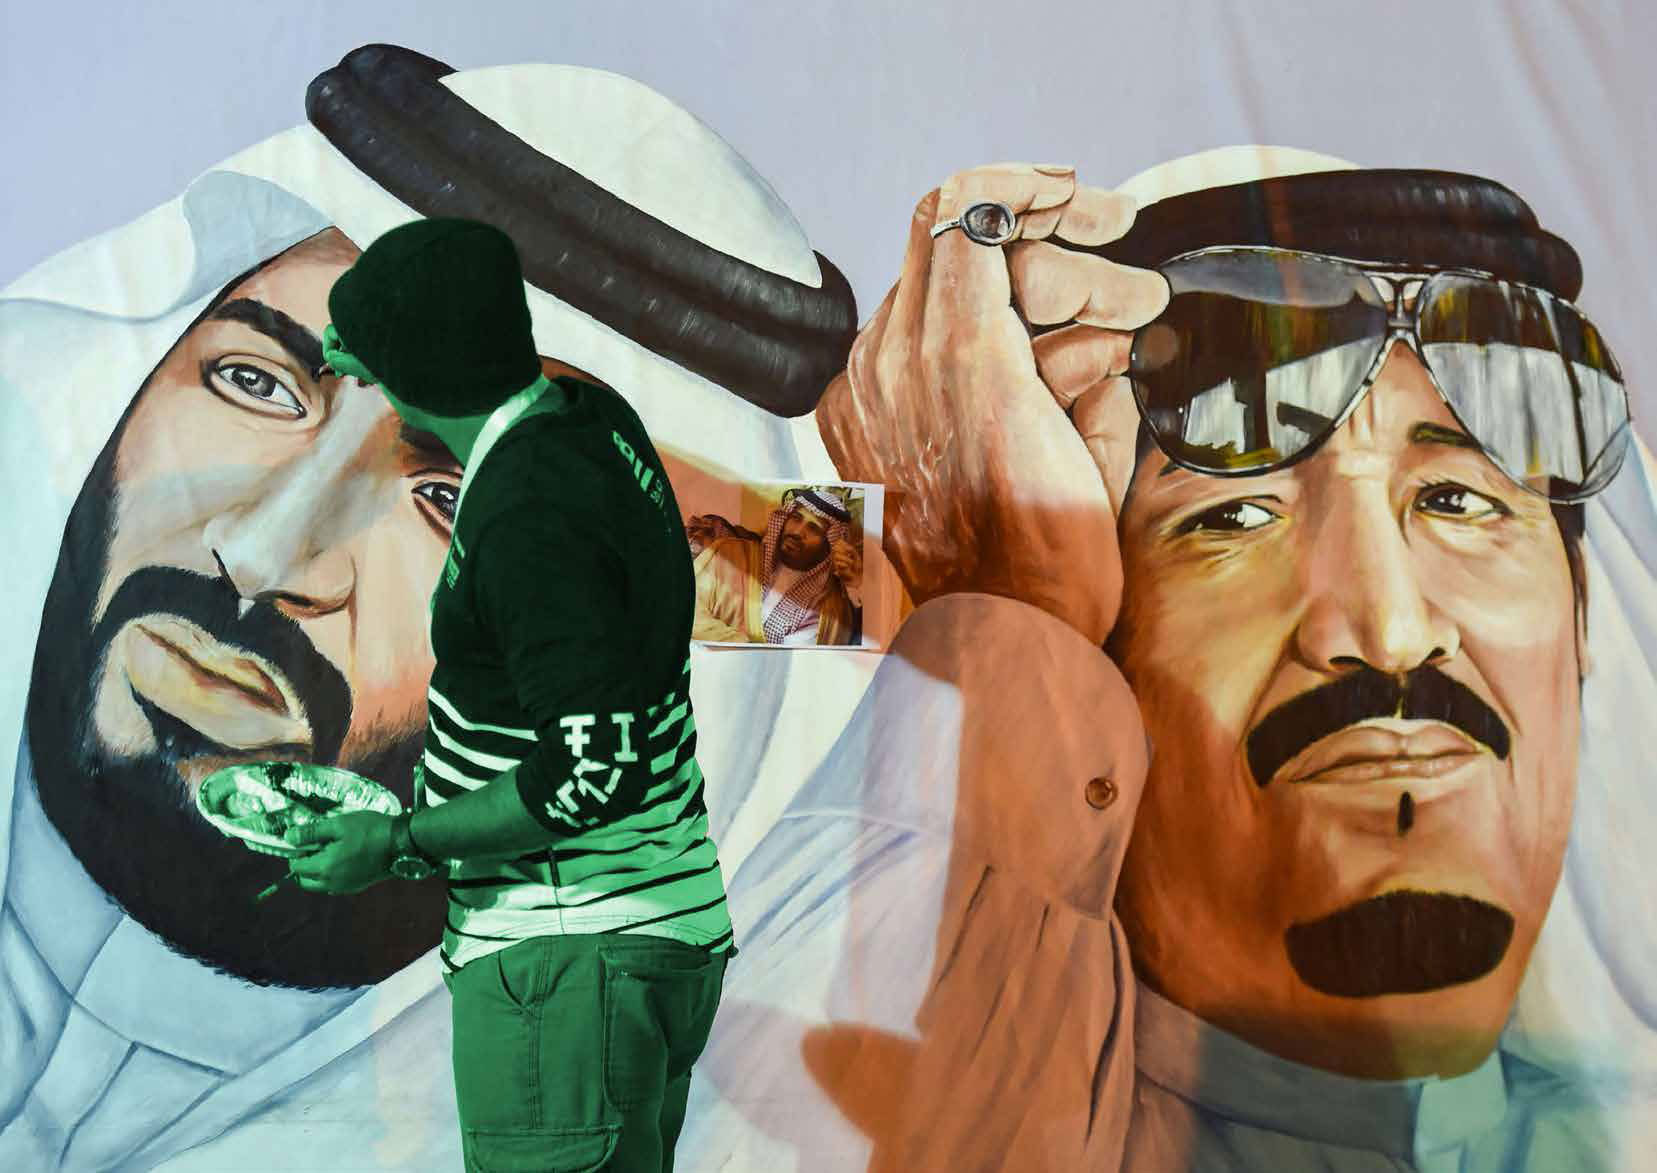 فنان سعودي يضع اللمسات الأخيرة على جدارية للملك سلمان بن عبدالعزيز، وولي عهده، خلال مهرجان الثقافة والتراث الثاني والثلاثين بالرياض في 17 فبراير الماضي